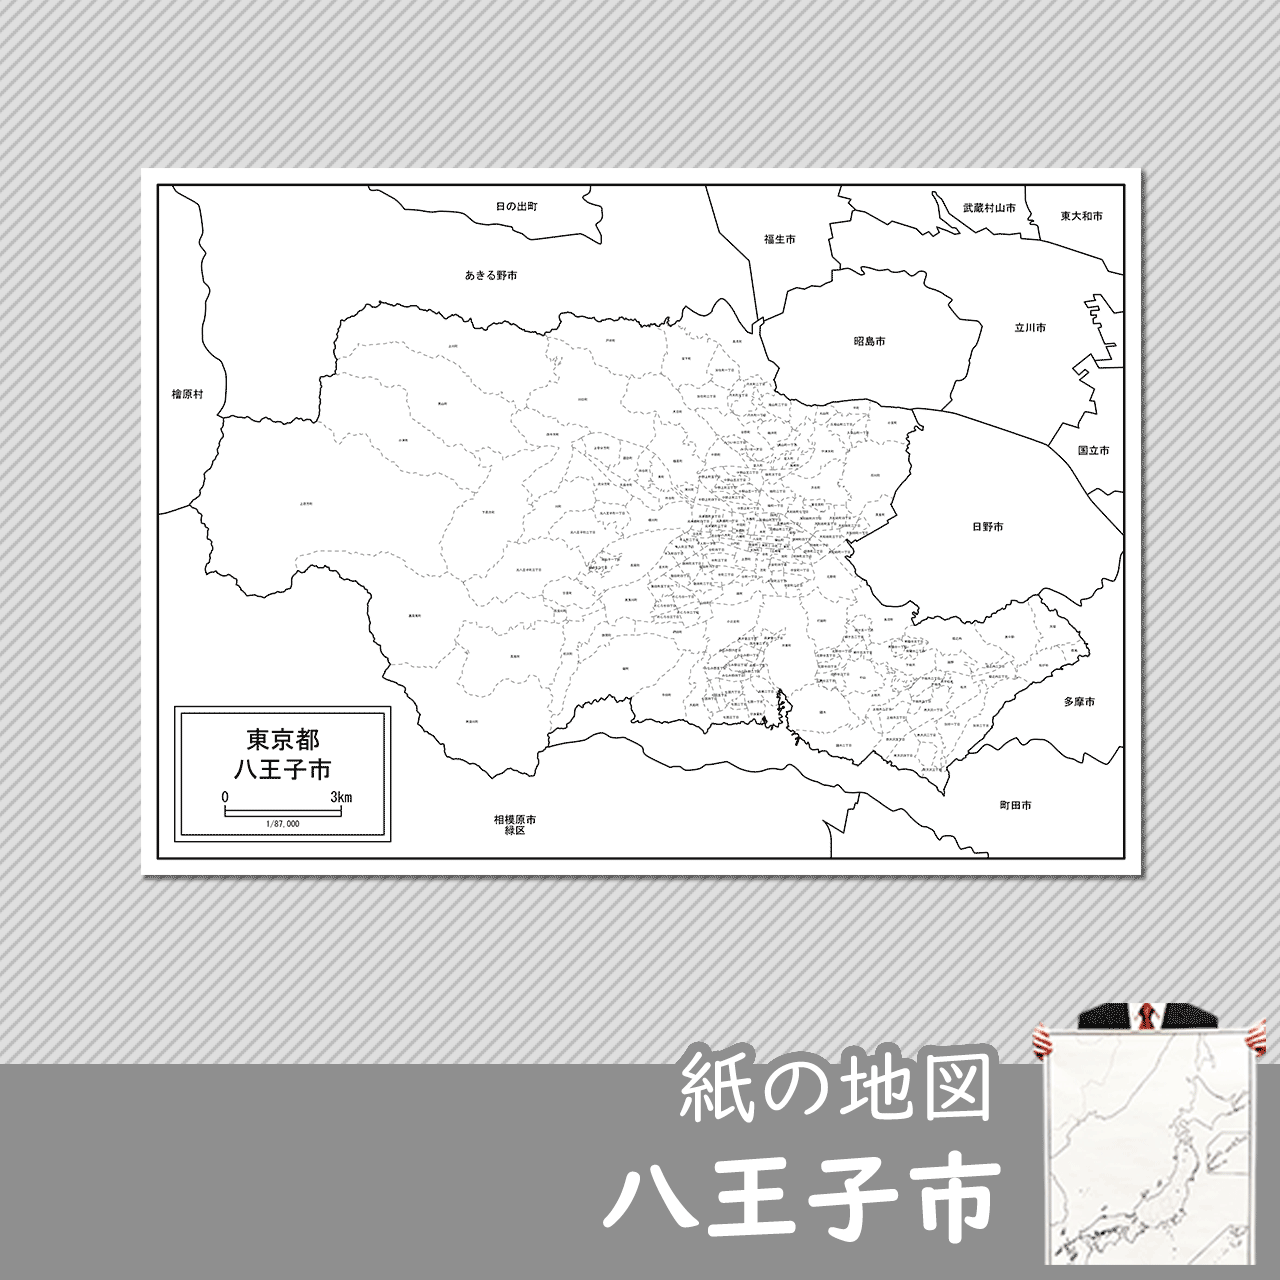 八王子市の紙の白地図のサムネイル